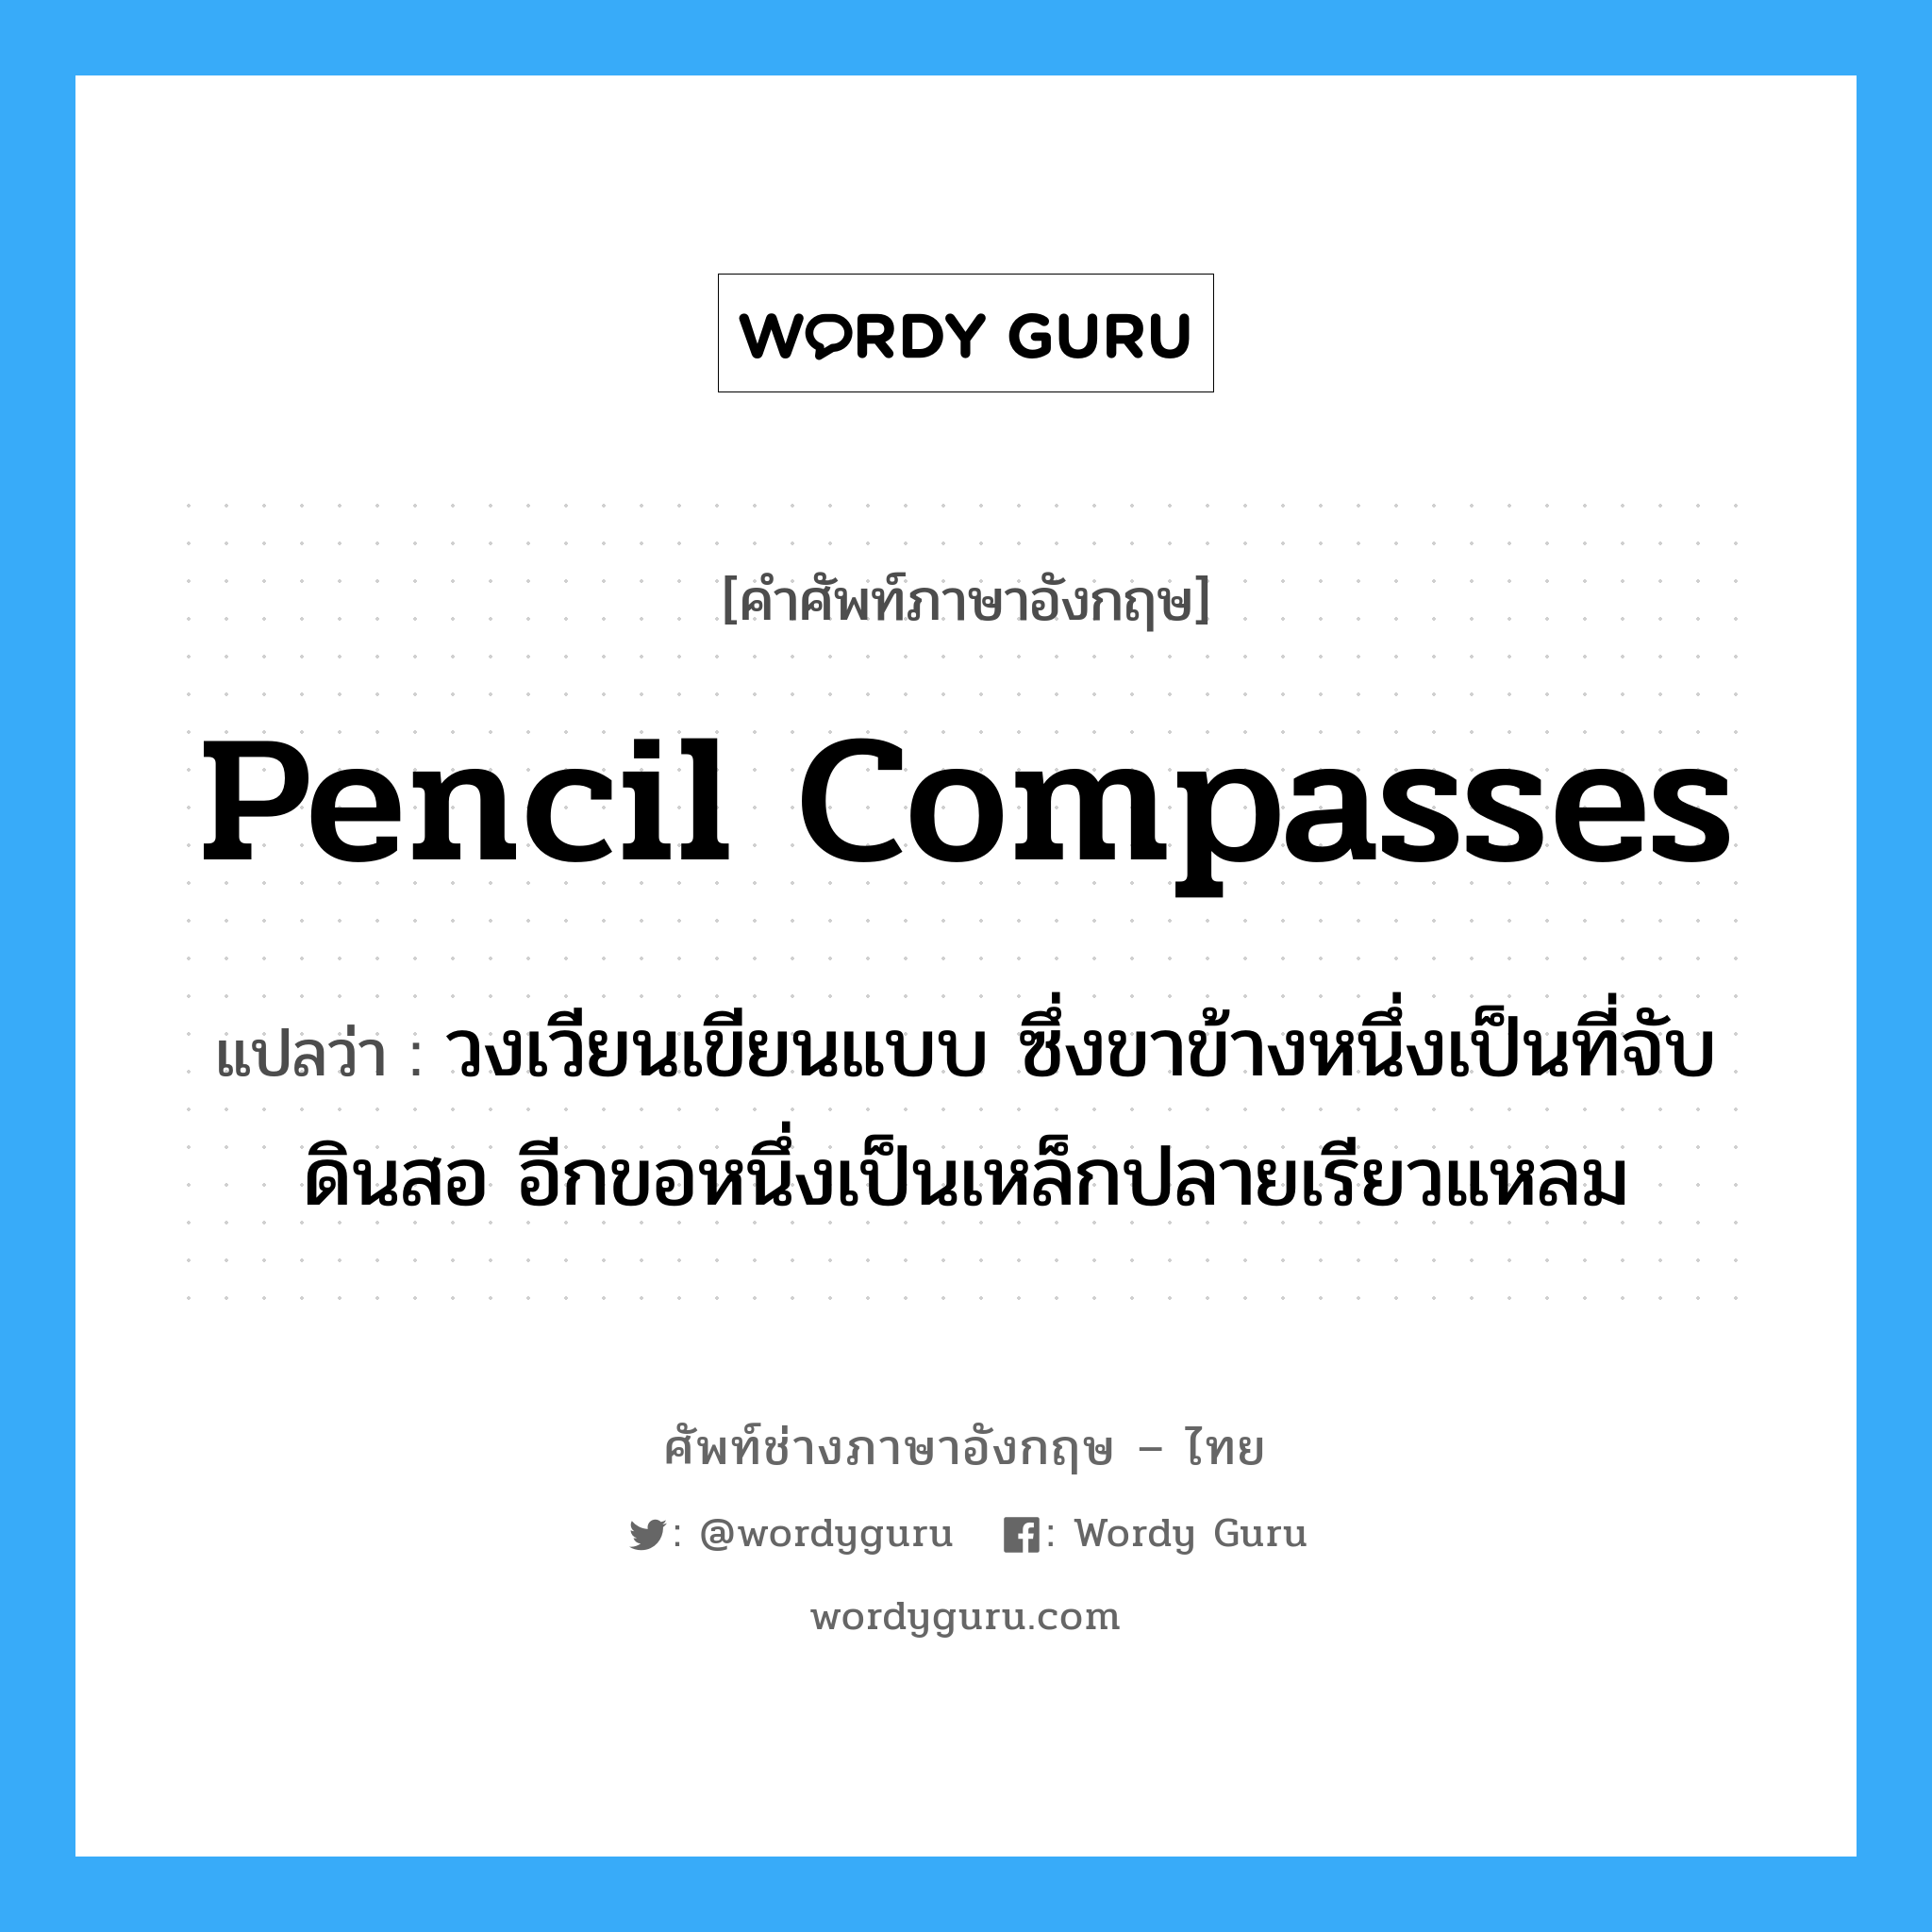 pencil compasses แปลว่า?, คำศัพท์ช่างภาษาอังกฤษ - ไทย pencil compasses คำศัพท์ภาษาอังกฤษ pencil compasses แปลว่า วงเวียนเขียนแบบ ซึ่งขาข้างหนึ่งเป็นที่จับดินสอ อีกขอหนึ่งเป็นเหล็กปลายเรียวแหลม